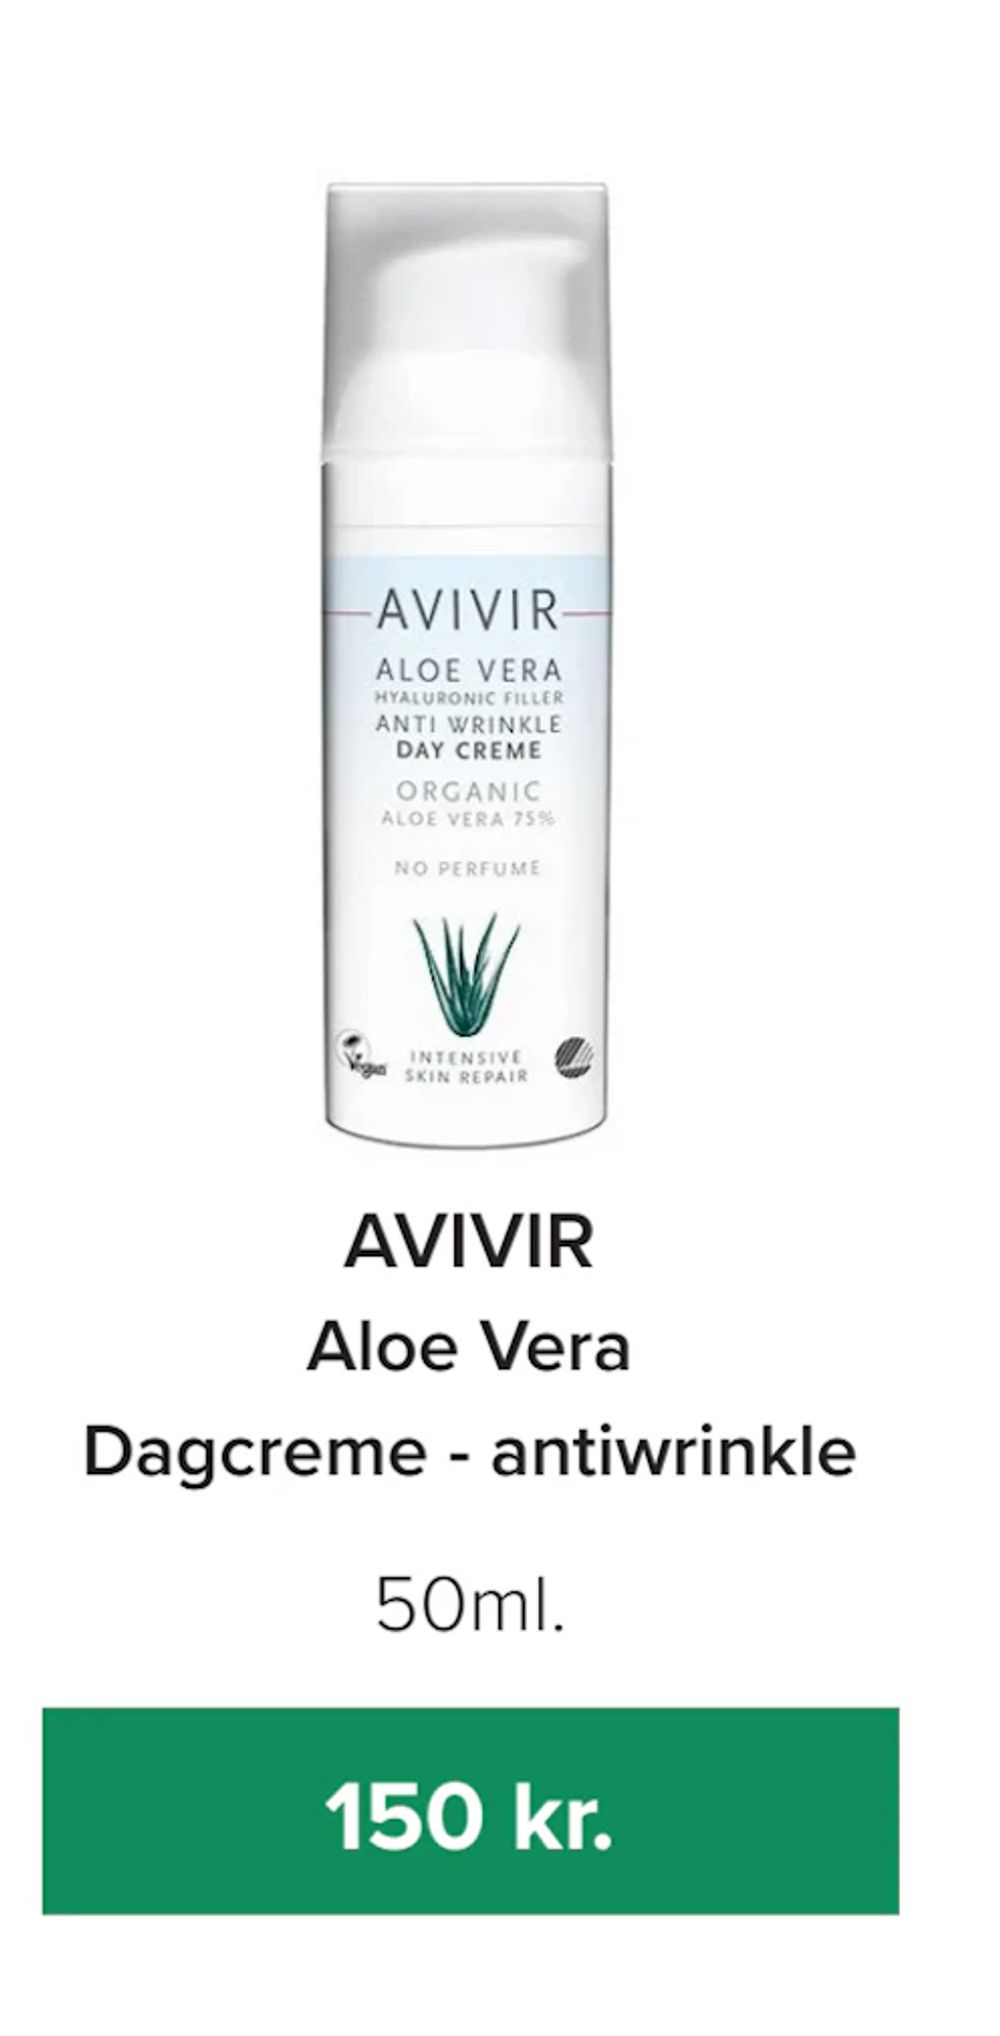 Tilbud på Aloe Vera Dagcreme - antiwrinkle fra Helsemin til 150 kr.